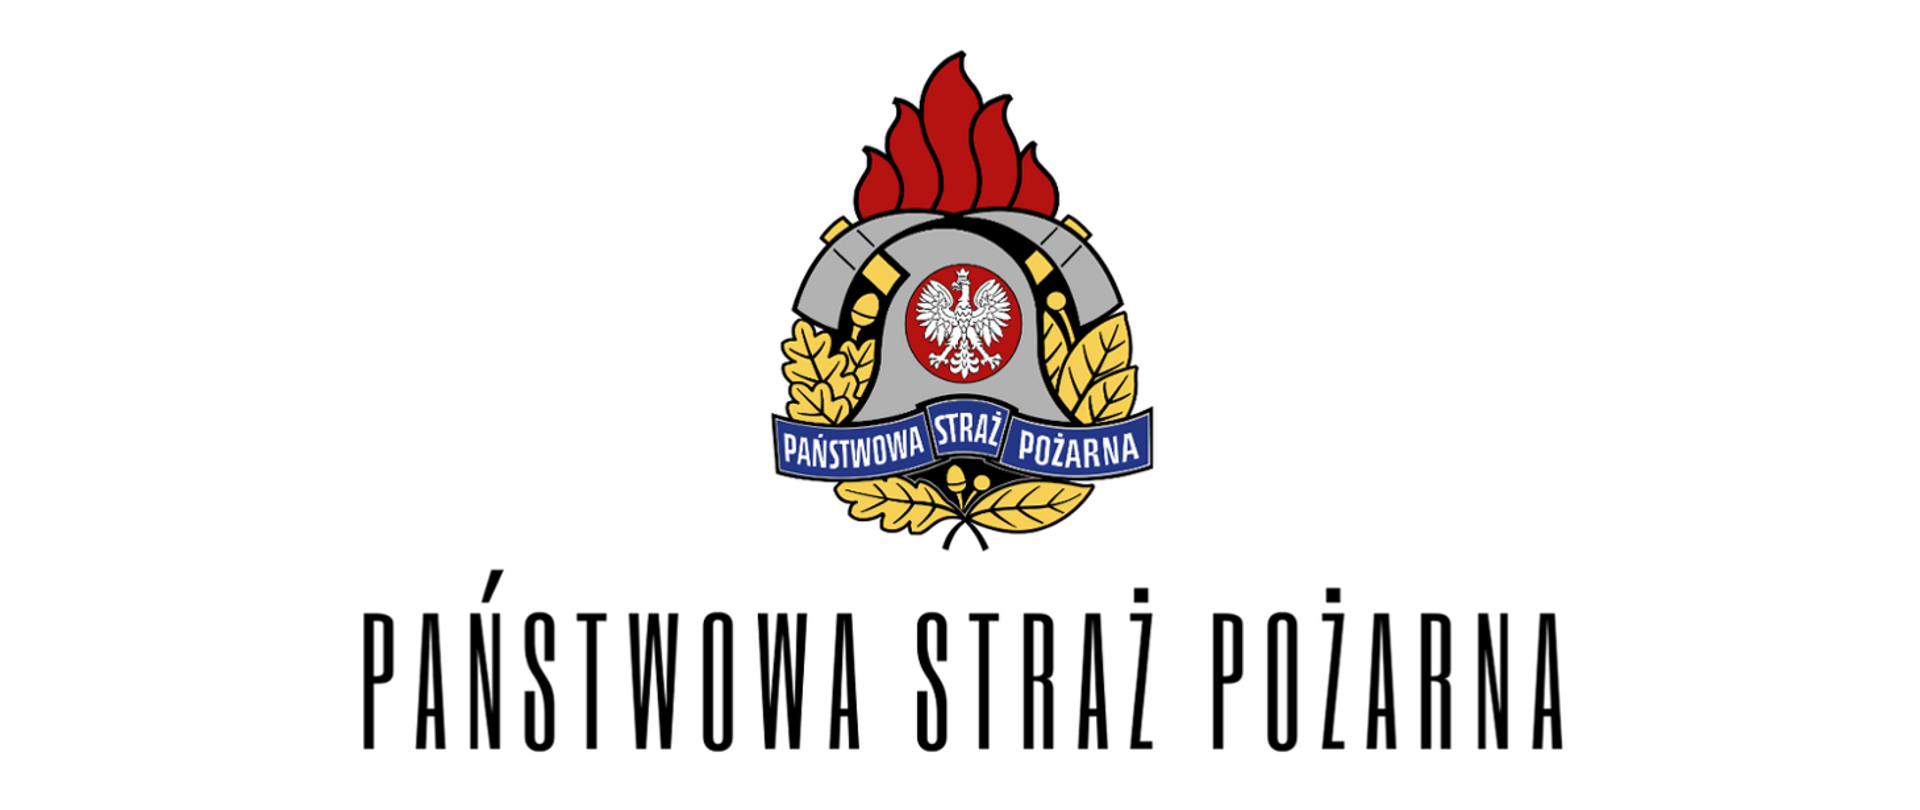 Zdjęcie przedstawia logo Państwowej Straży Pożarnej oraz pod nim napis "Państwowa Straż Pożarna"